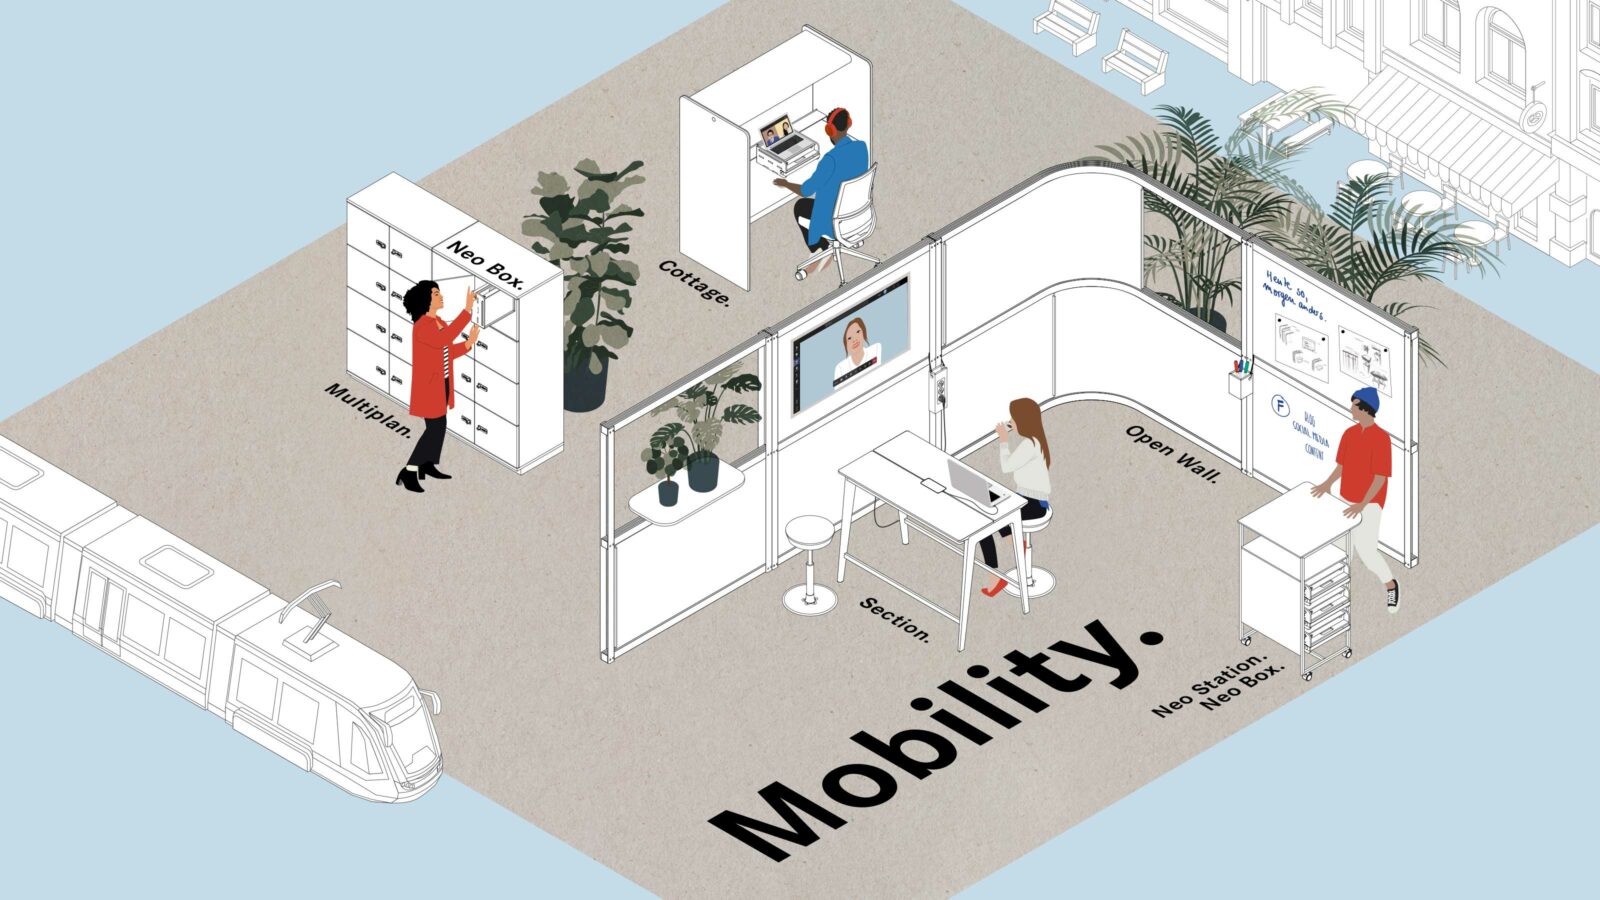 Zeichnung zum Thema Mobilität in der Arbeitswelt zeigt ein offenes Büro mit Menschen und Produktlösungen sowie einen Zug und eine Hausfassade